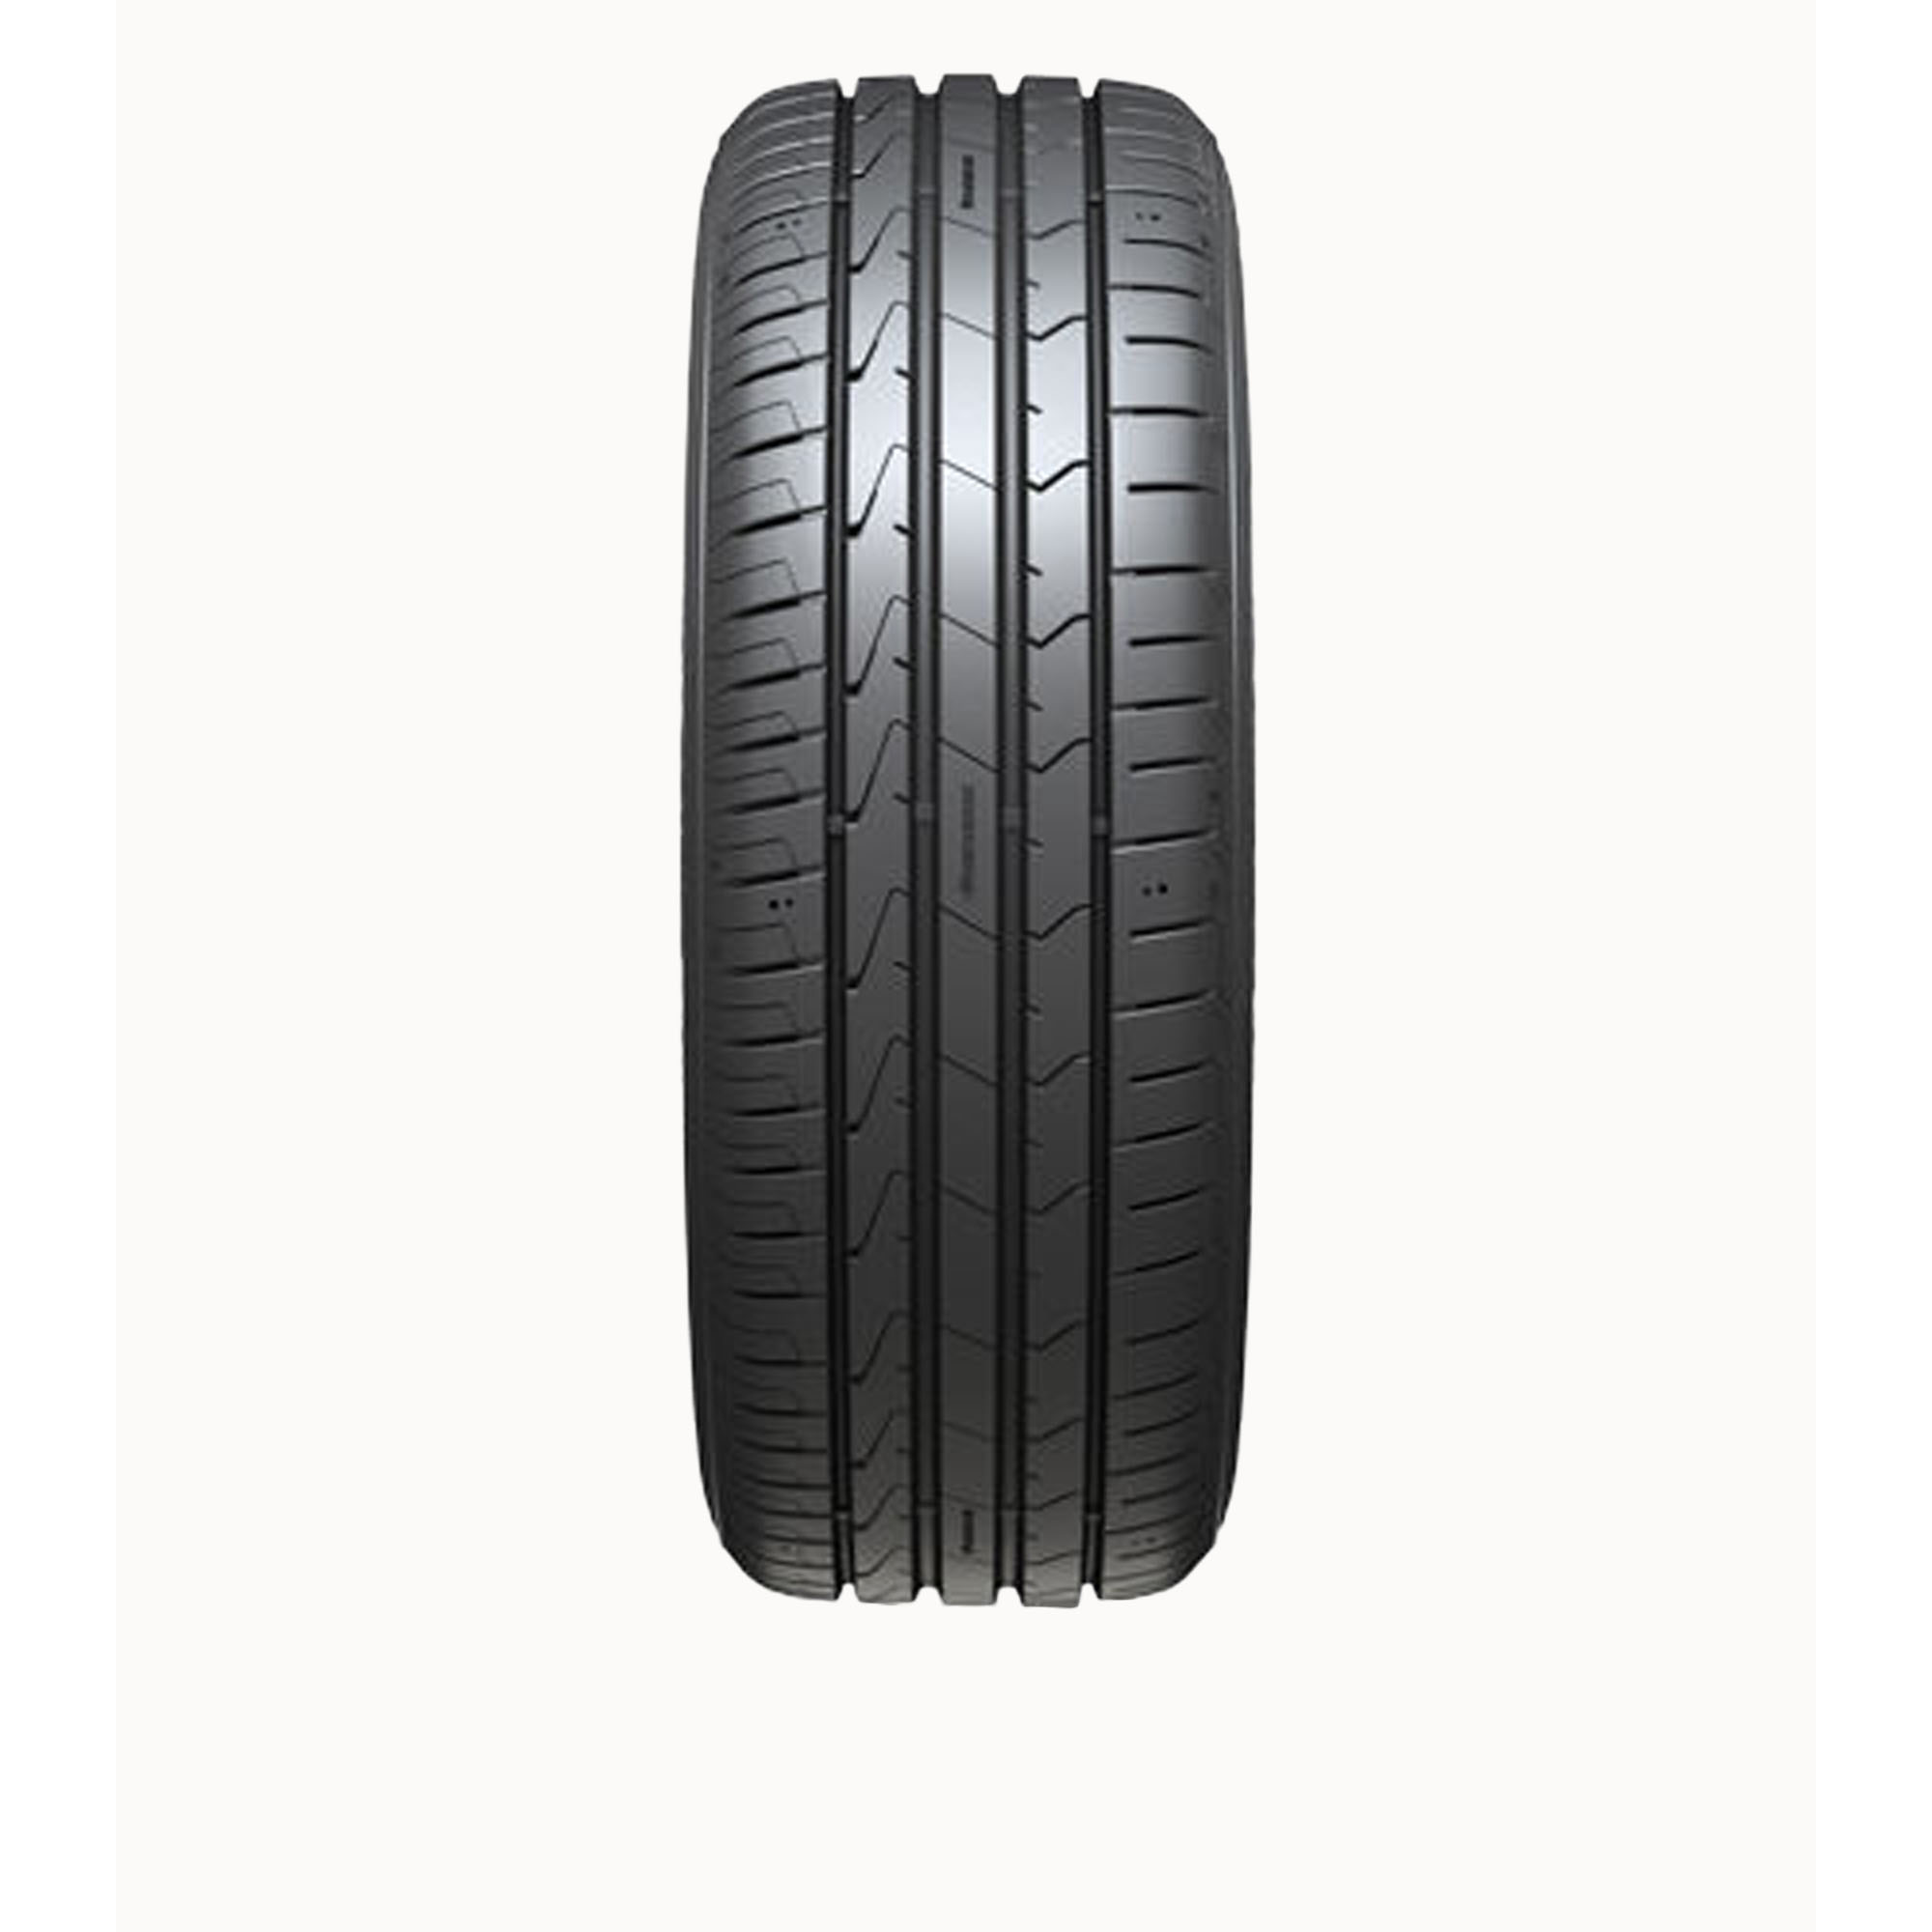 (k125) 195/55r16 New 1 55 - 16 Tires Ventus Prime3 | eBay Hankook 195 1955516